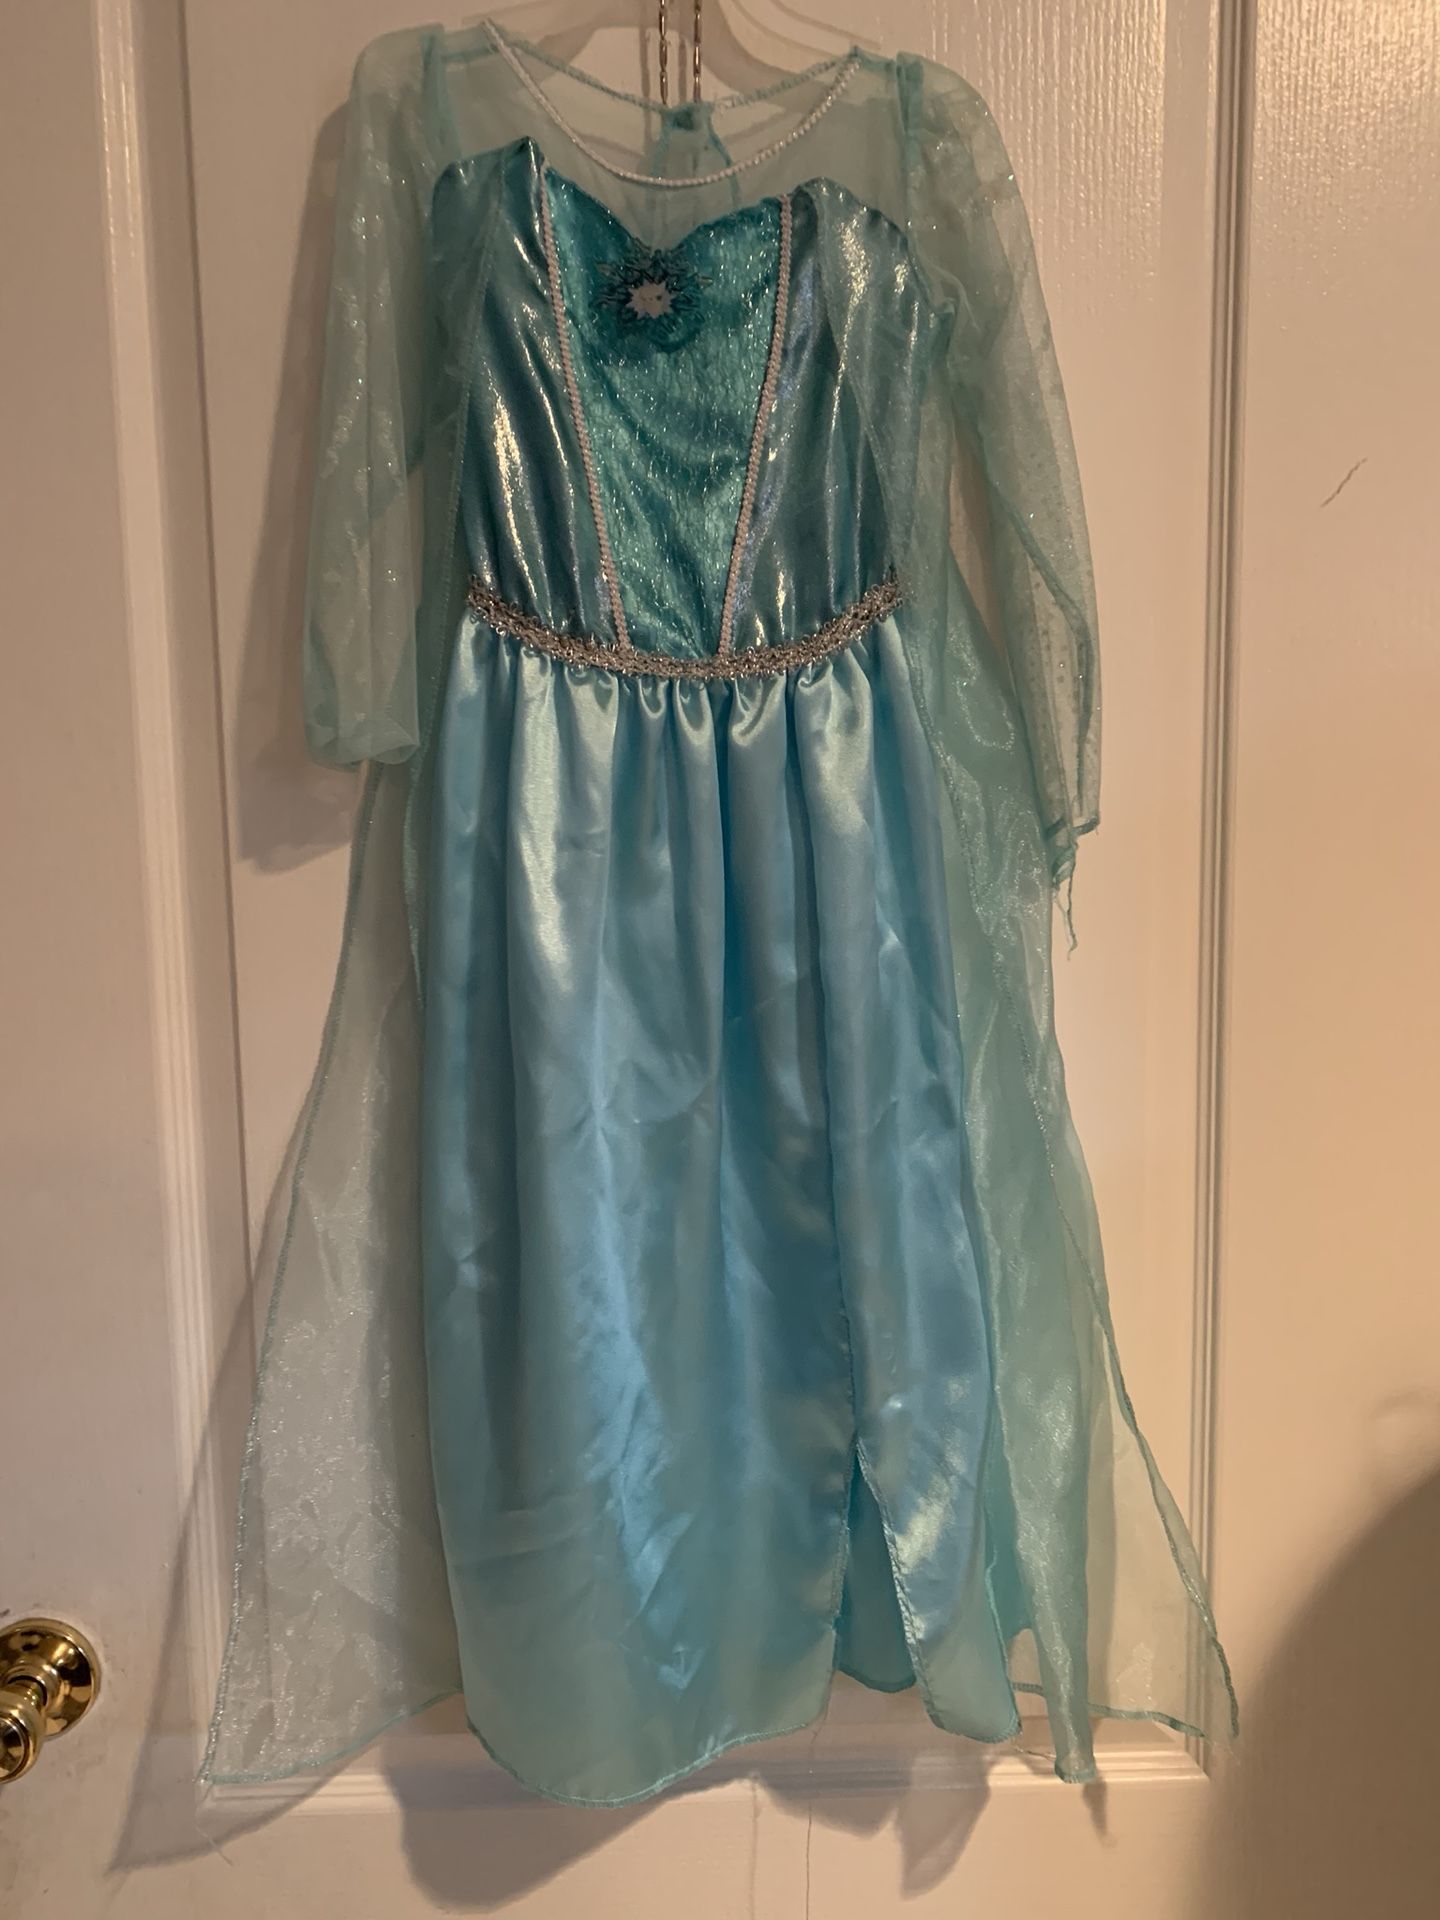 Elsa costume size 4 -6x